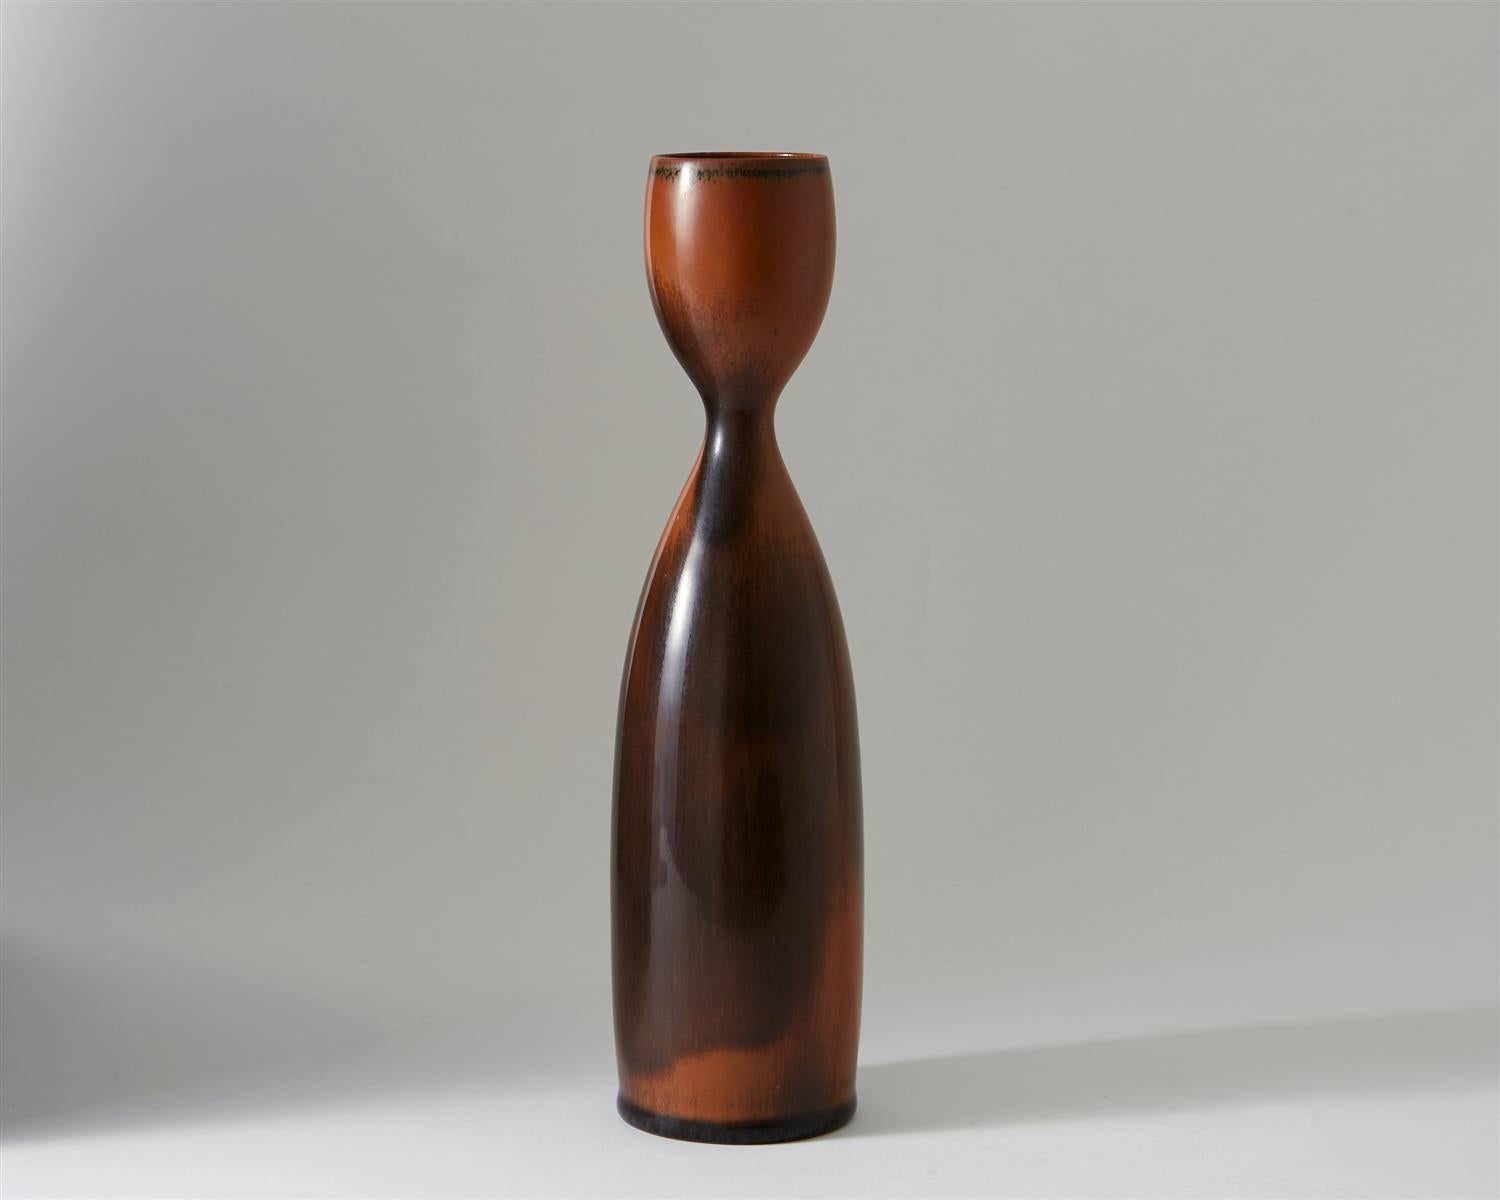 Vase, designed by Stig Lindberg for Gustavsberg
Sweden, 1956.

Stoneware.

Measures: H 24 cm/ 9 1/2